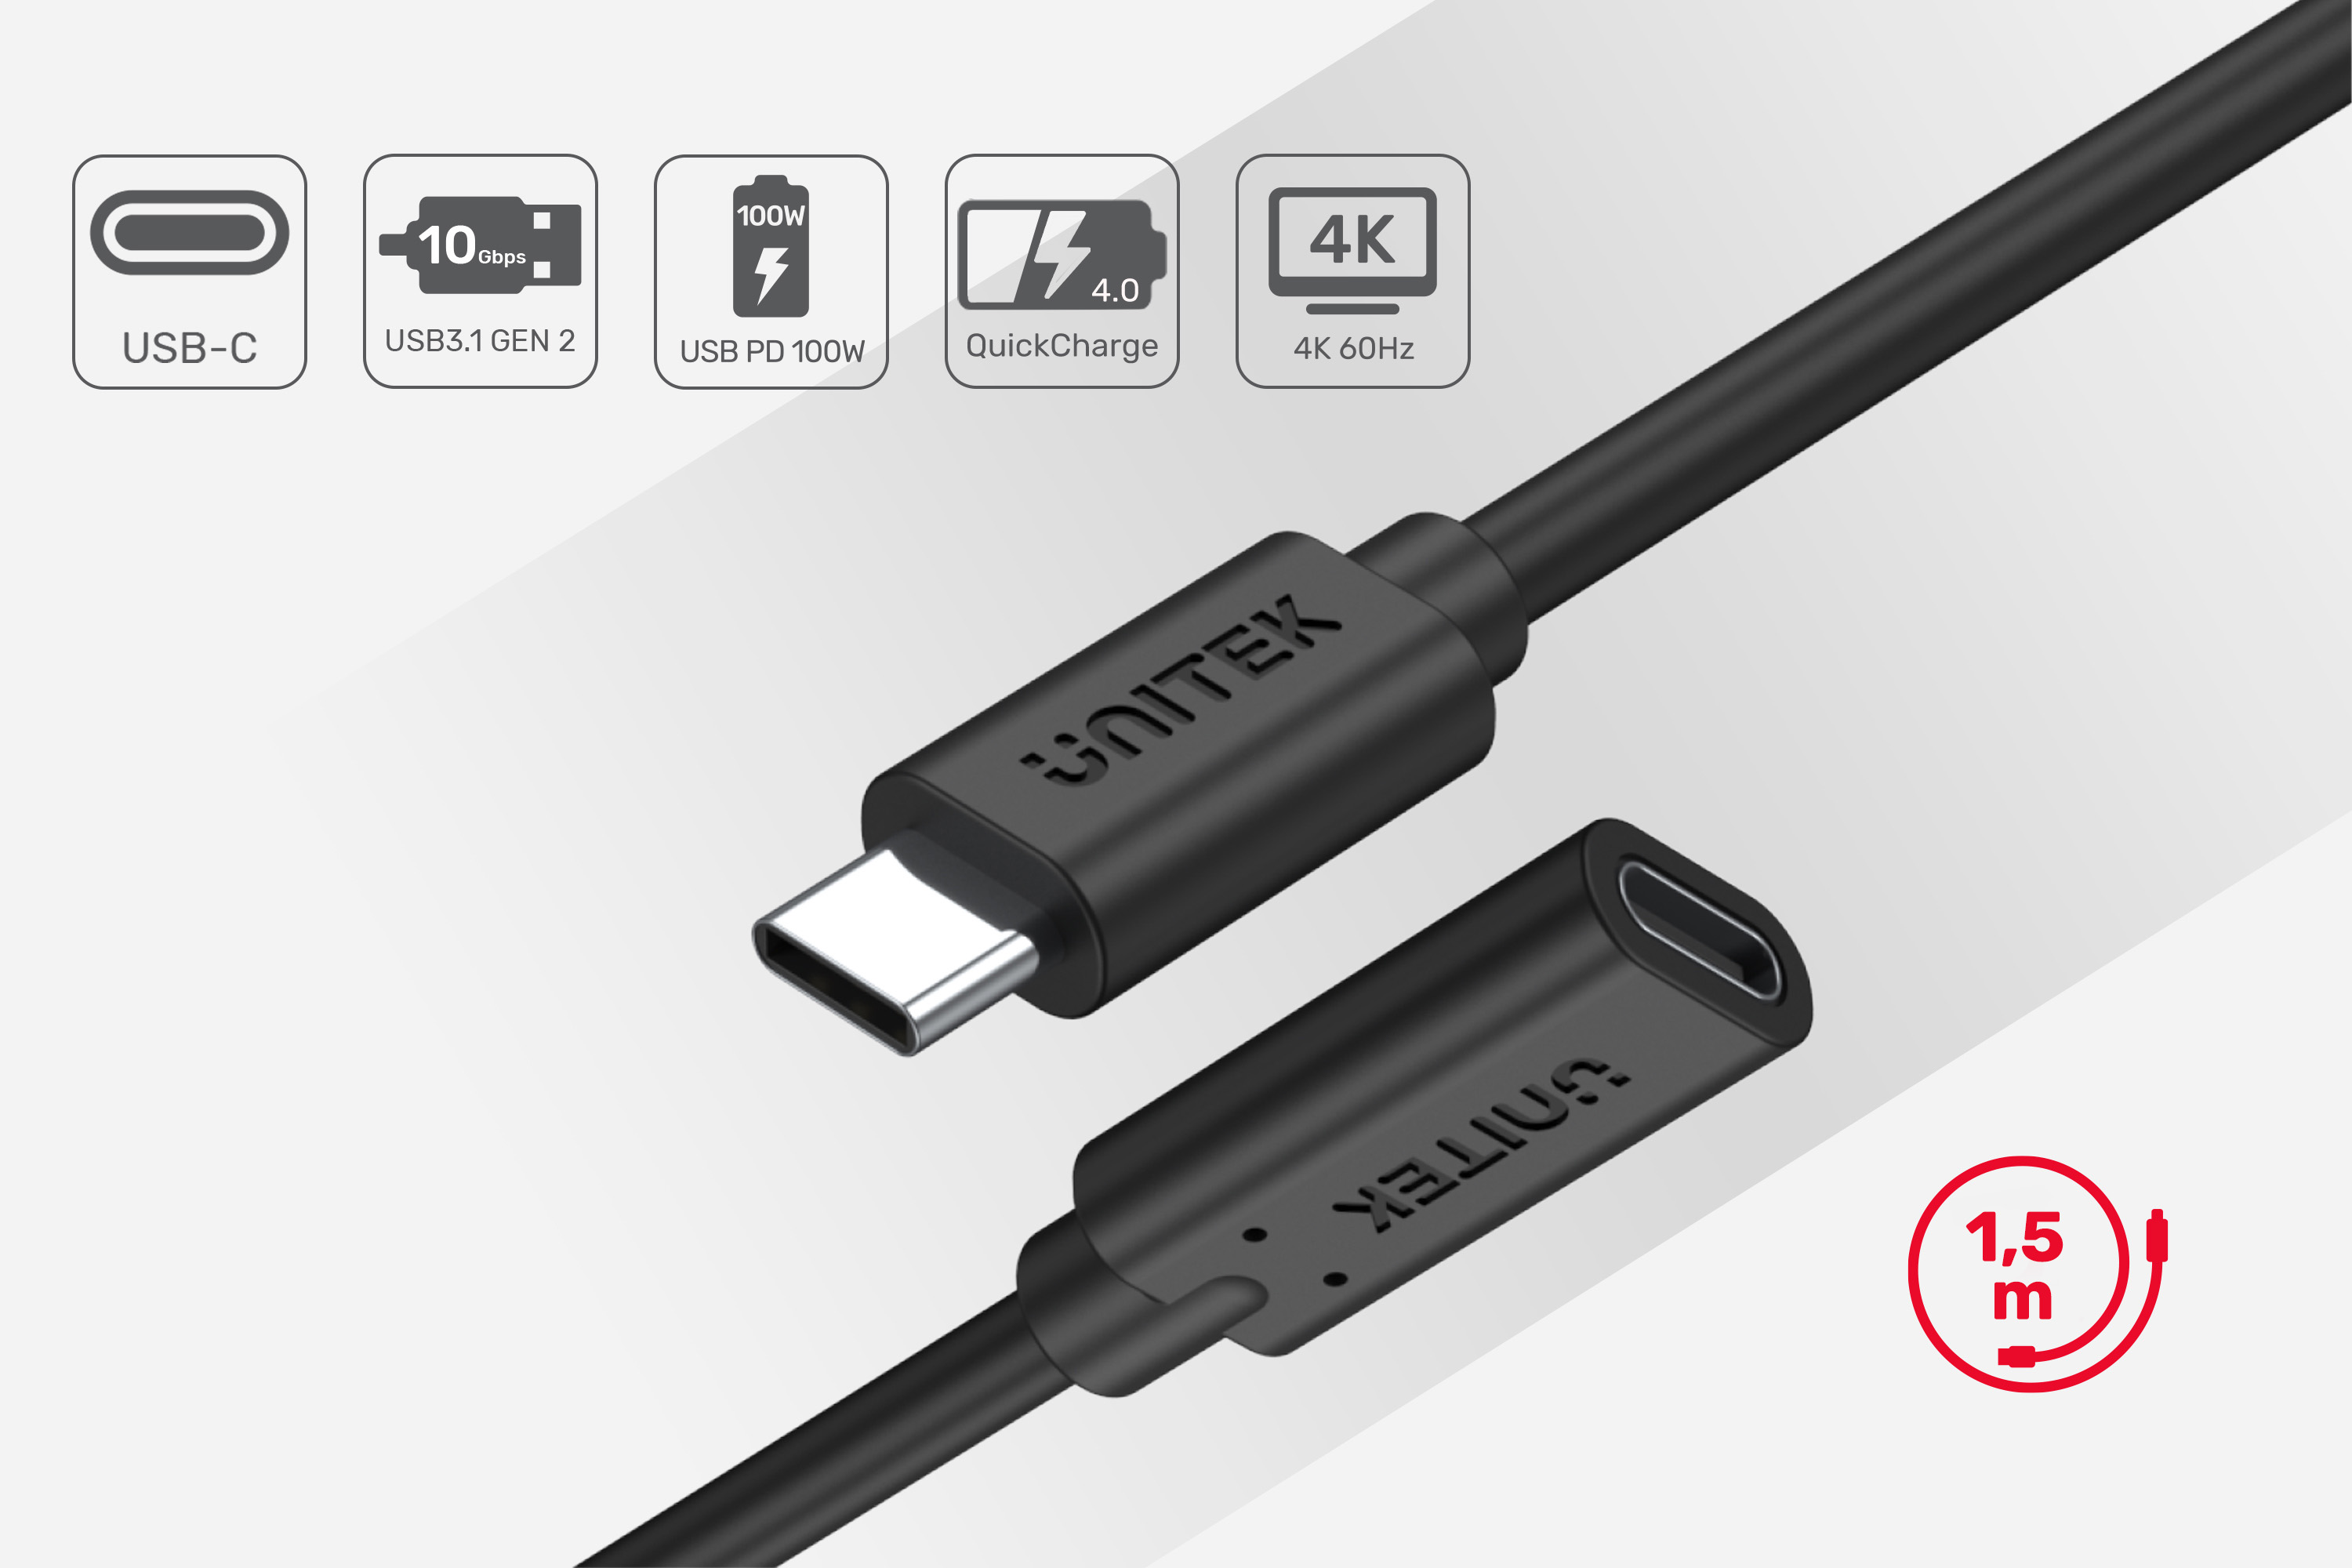 Końcówki przedłużacza USB, kolor czarny, jedna końcówka z portem, druga z wtyczką. Standard usb 3.0